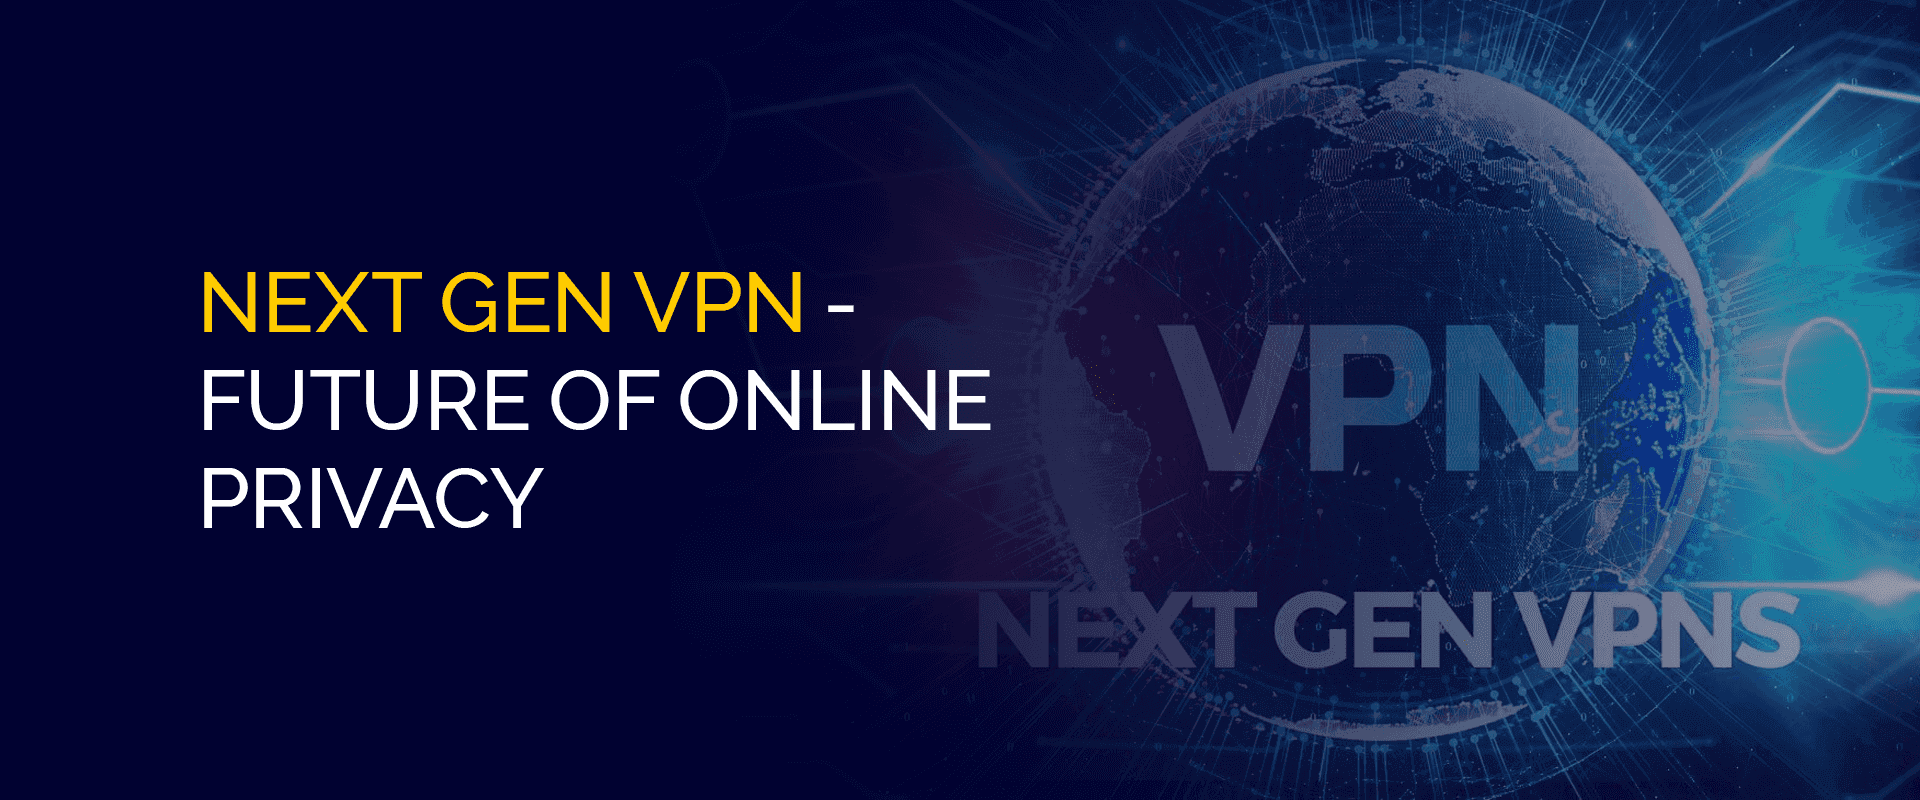 次世代 VPN - オンライン プライバシーの未来